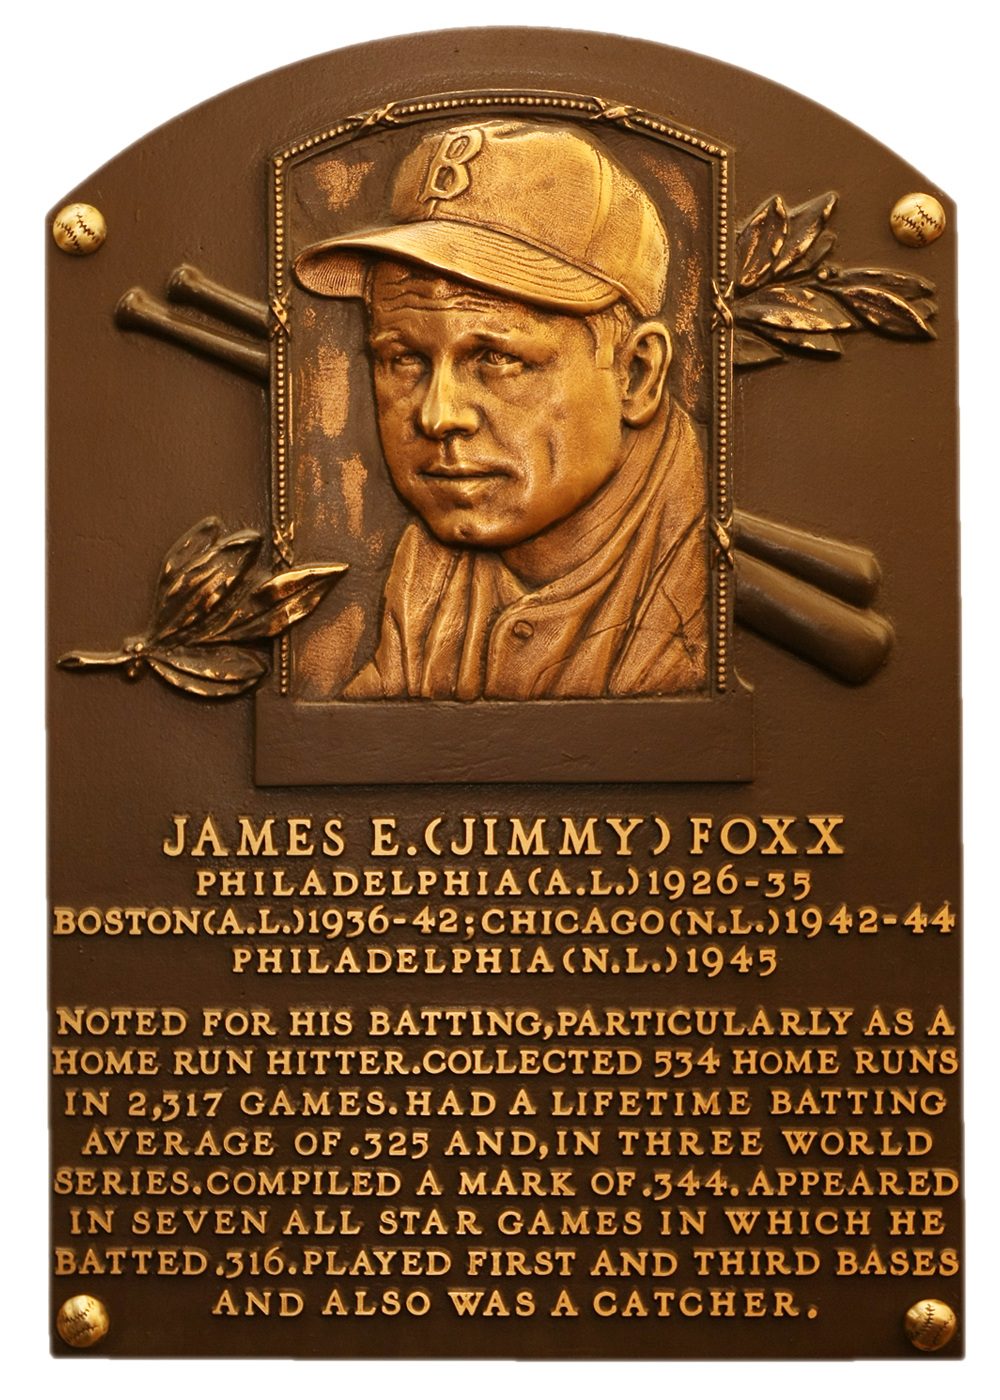 jimmie foxx stats